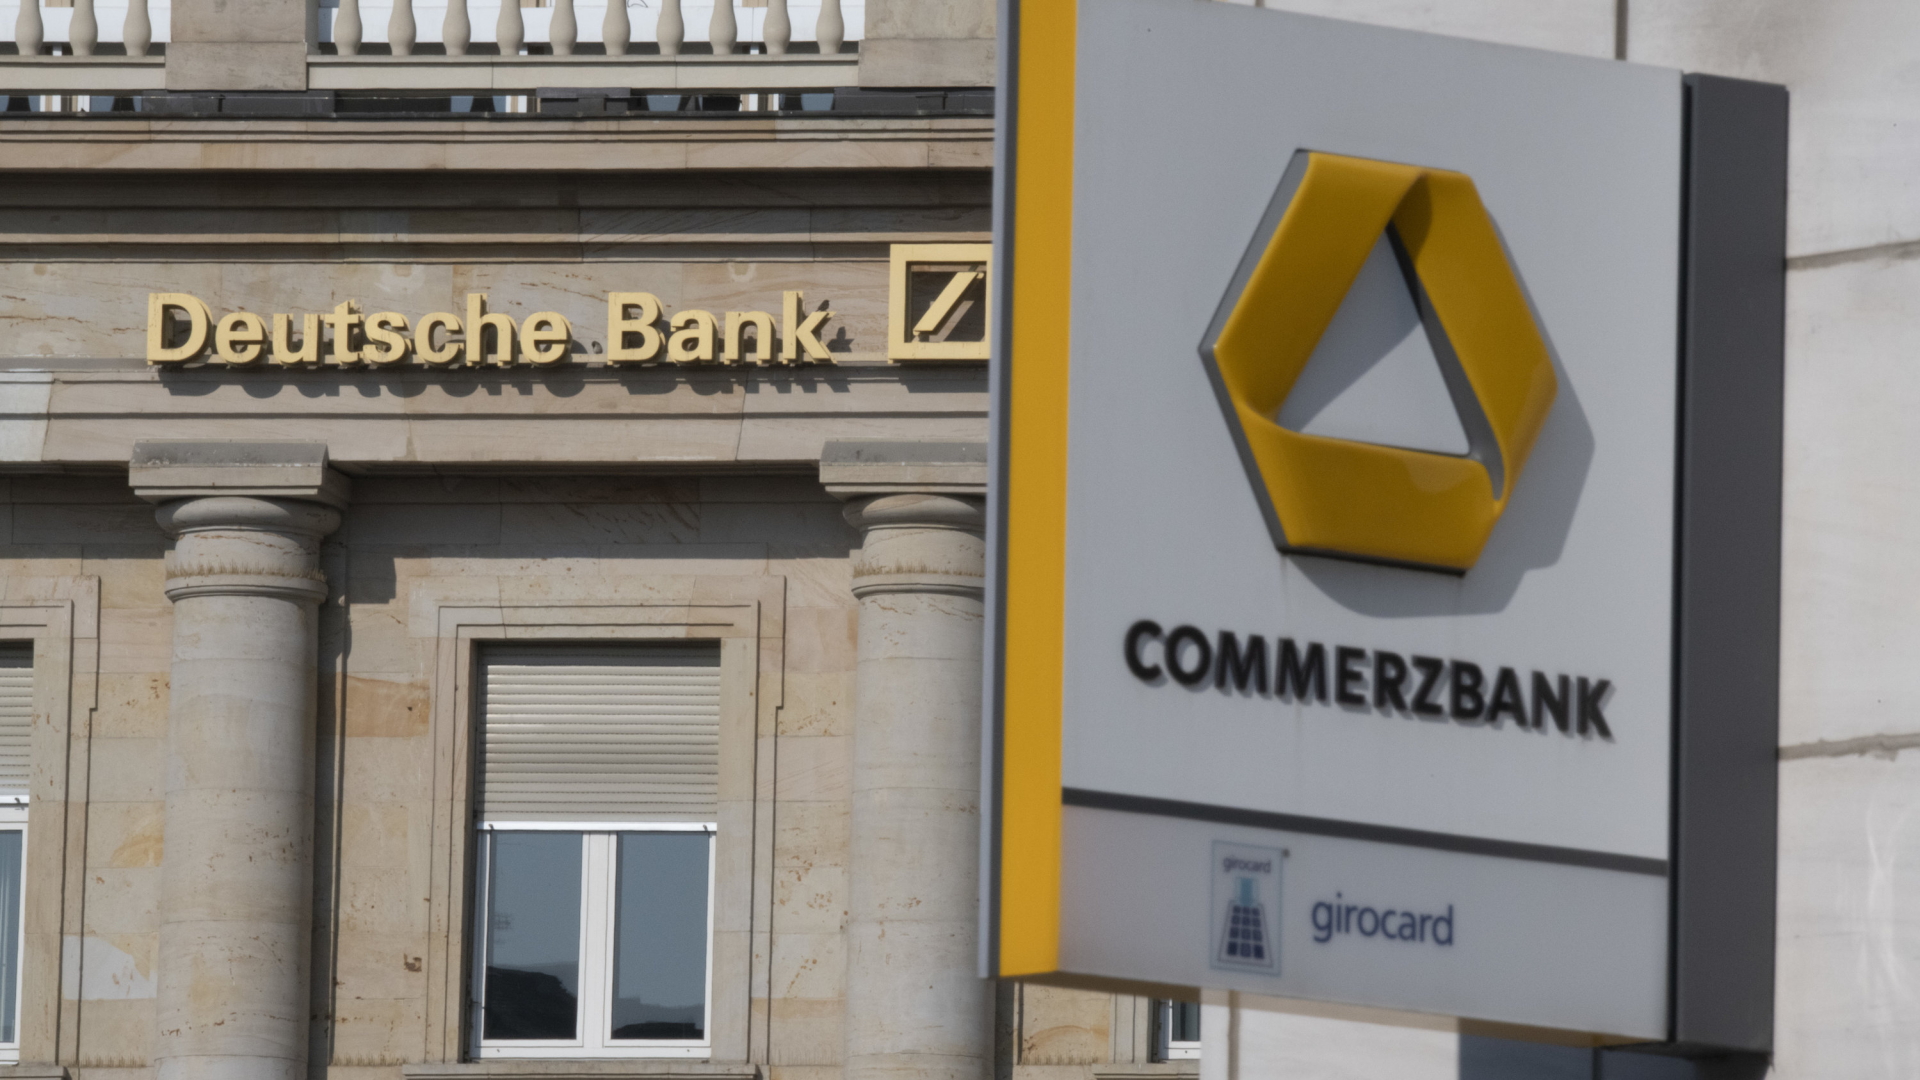 Der Schriftzug Deutsche Bank neben dem Logo iost auf einer Hauswand zu lesen, im Vordergrund ein Schild mit der Commerzbank mit Logo.